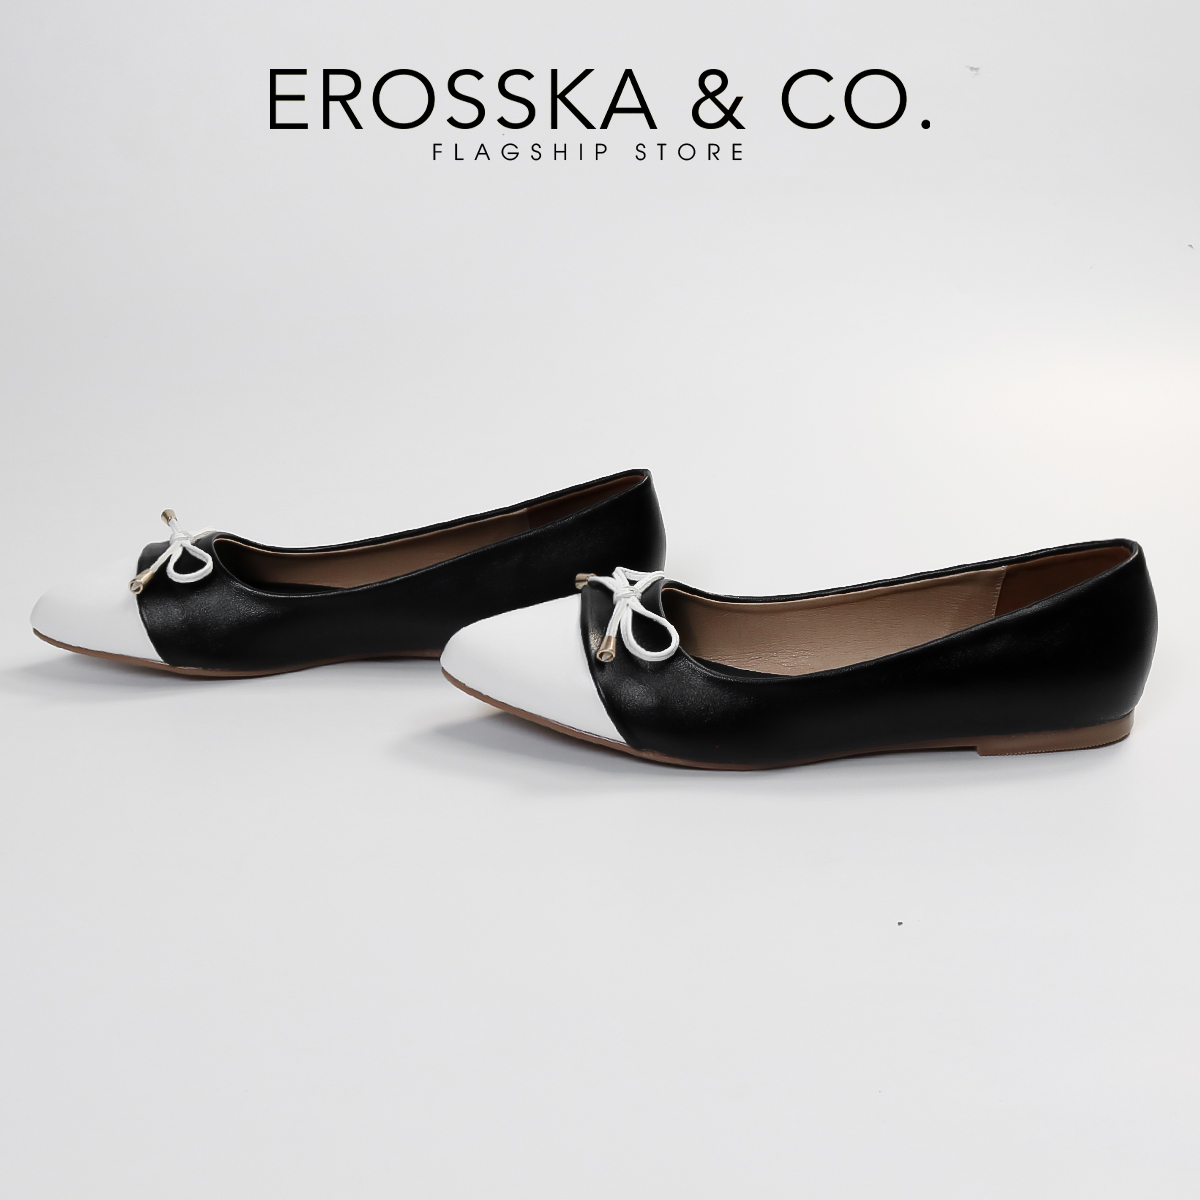 Erosska - Giày búp bê nữ thời trang đế bệt đính nơ xinh xắn - EF023